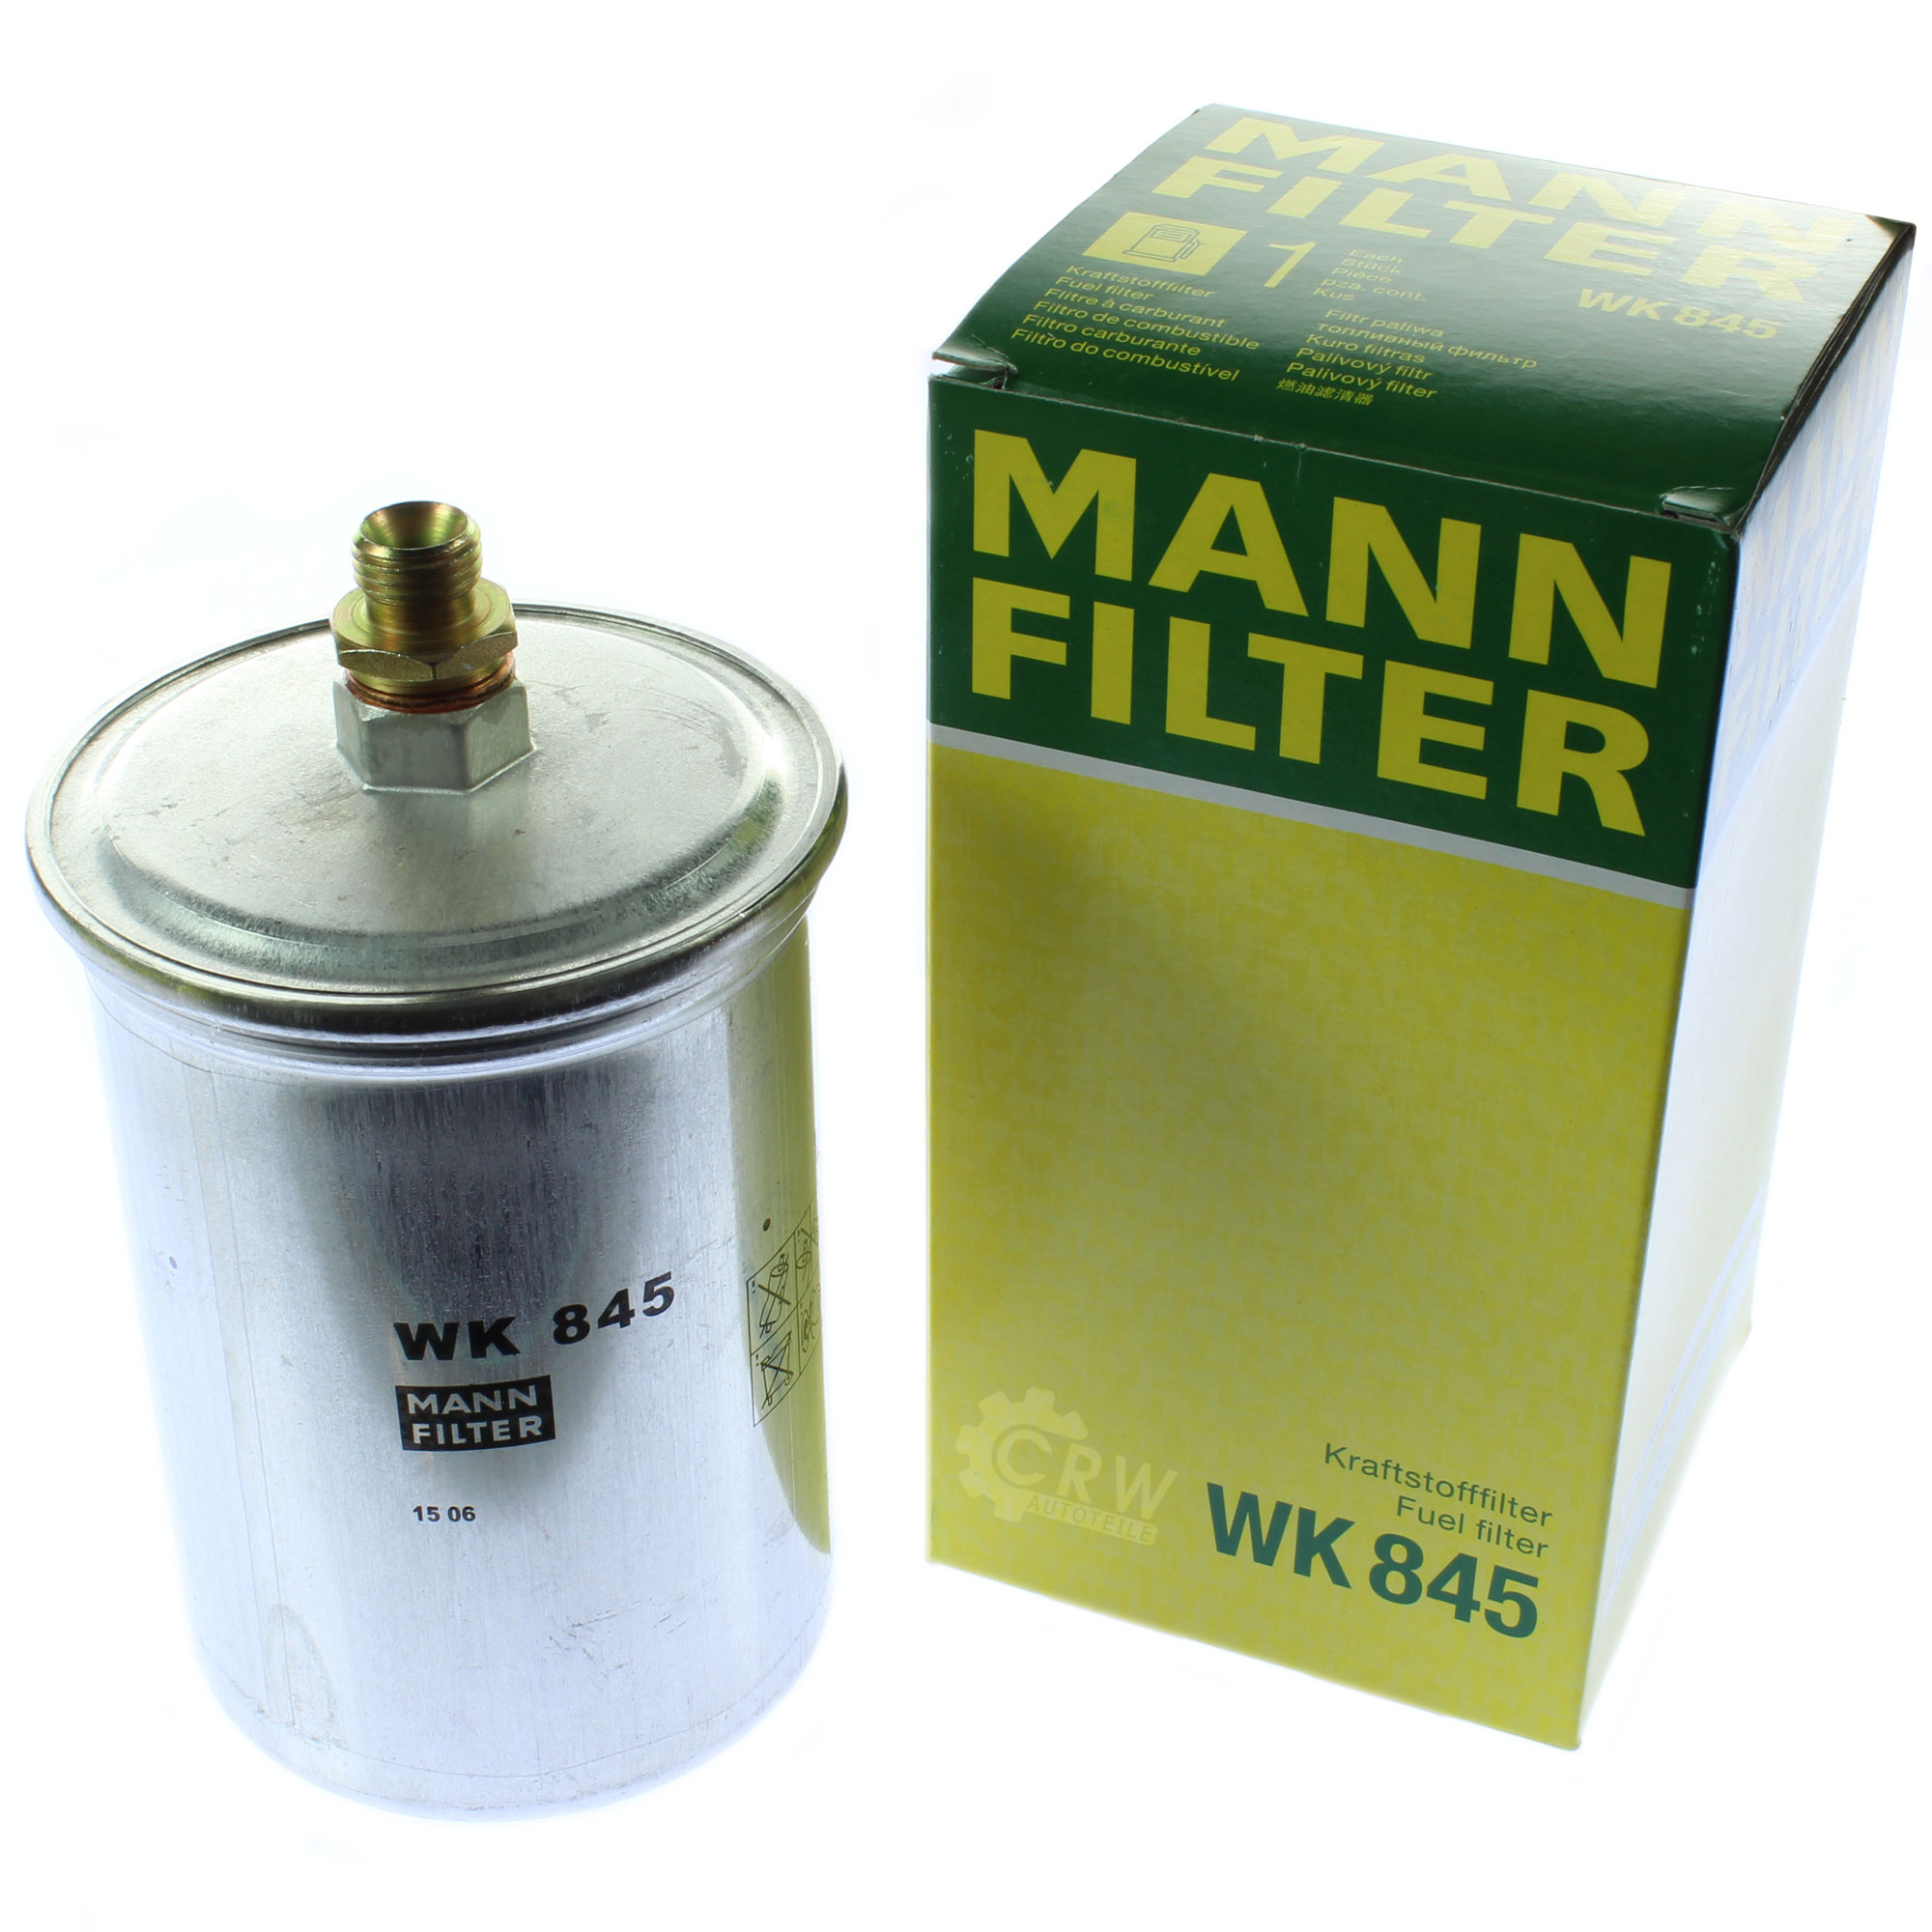 MANN-FILTER Kraftstofffilter WK 845 Fuel Filter